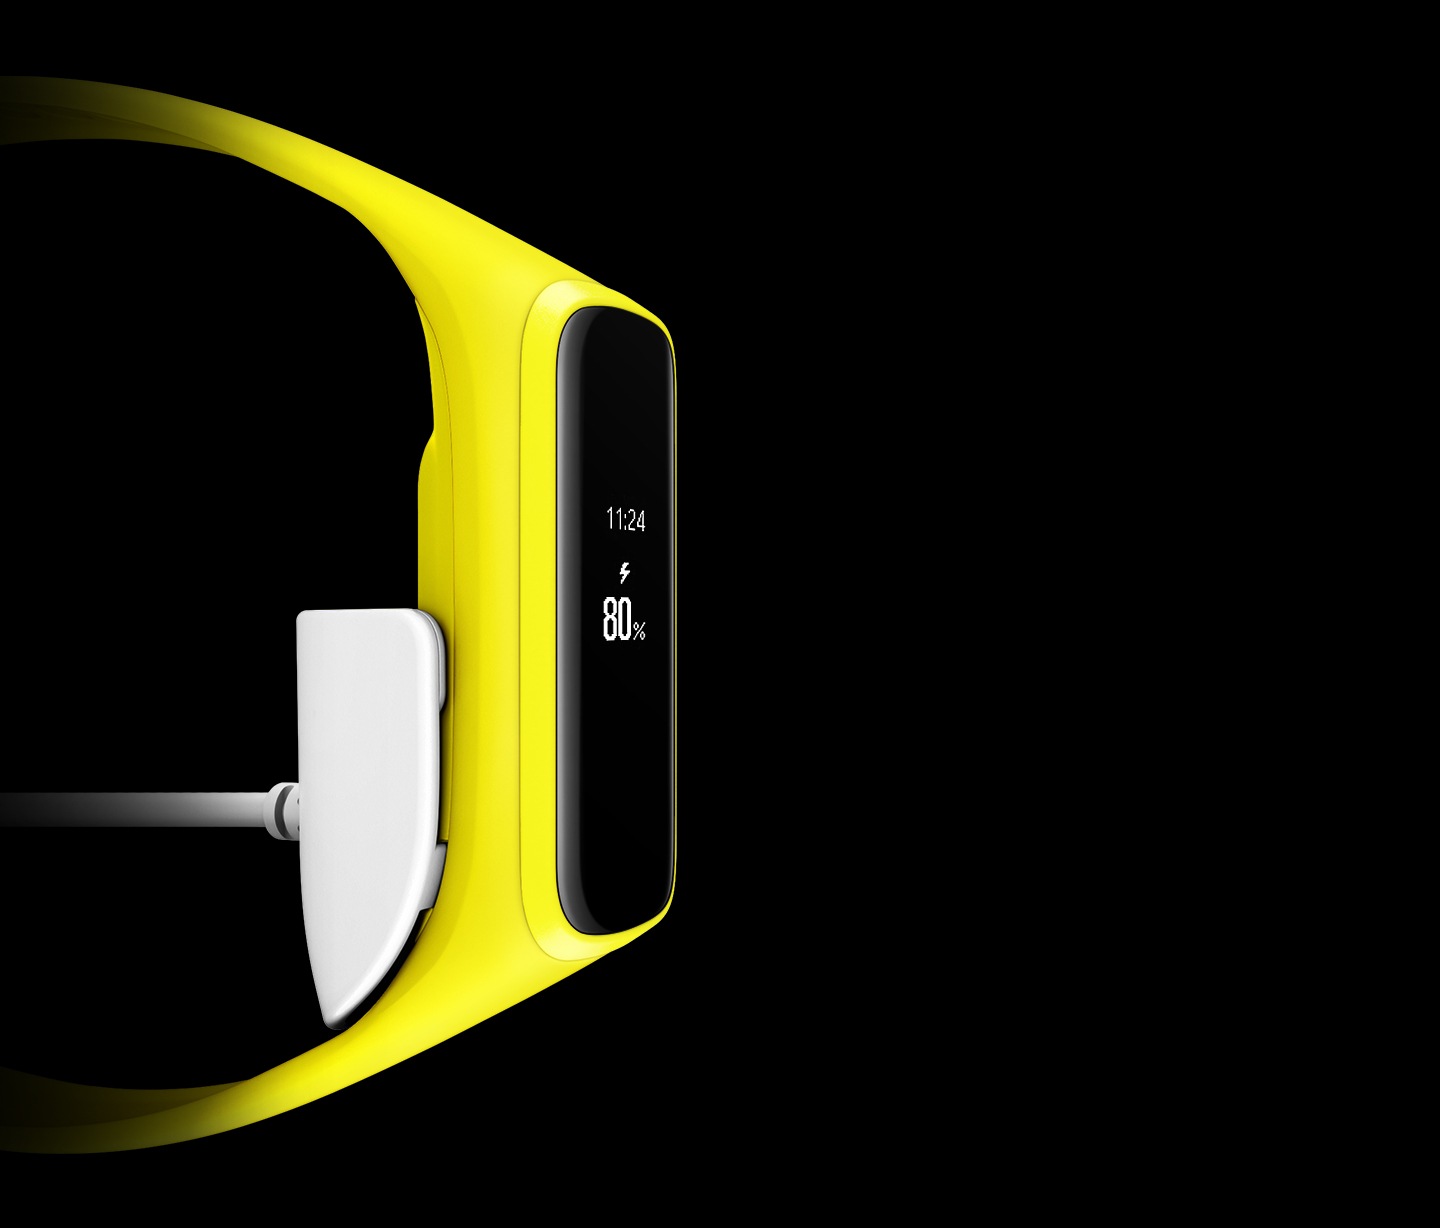 Galaxy fit, com pulseira amarela, encaixado no carregador, de cor banca. Na tela é exibido o horário e o indicativo de que o carregamento está 80% concluído.